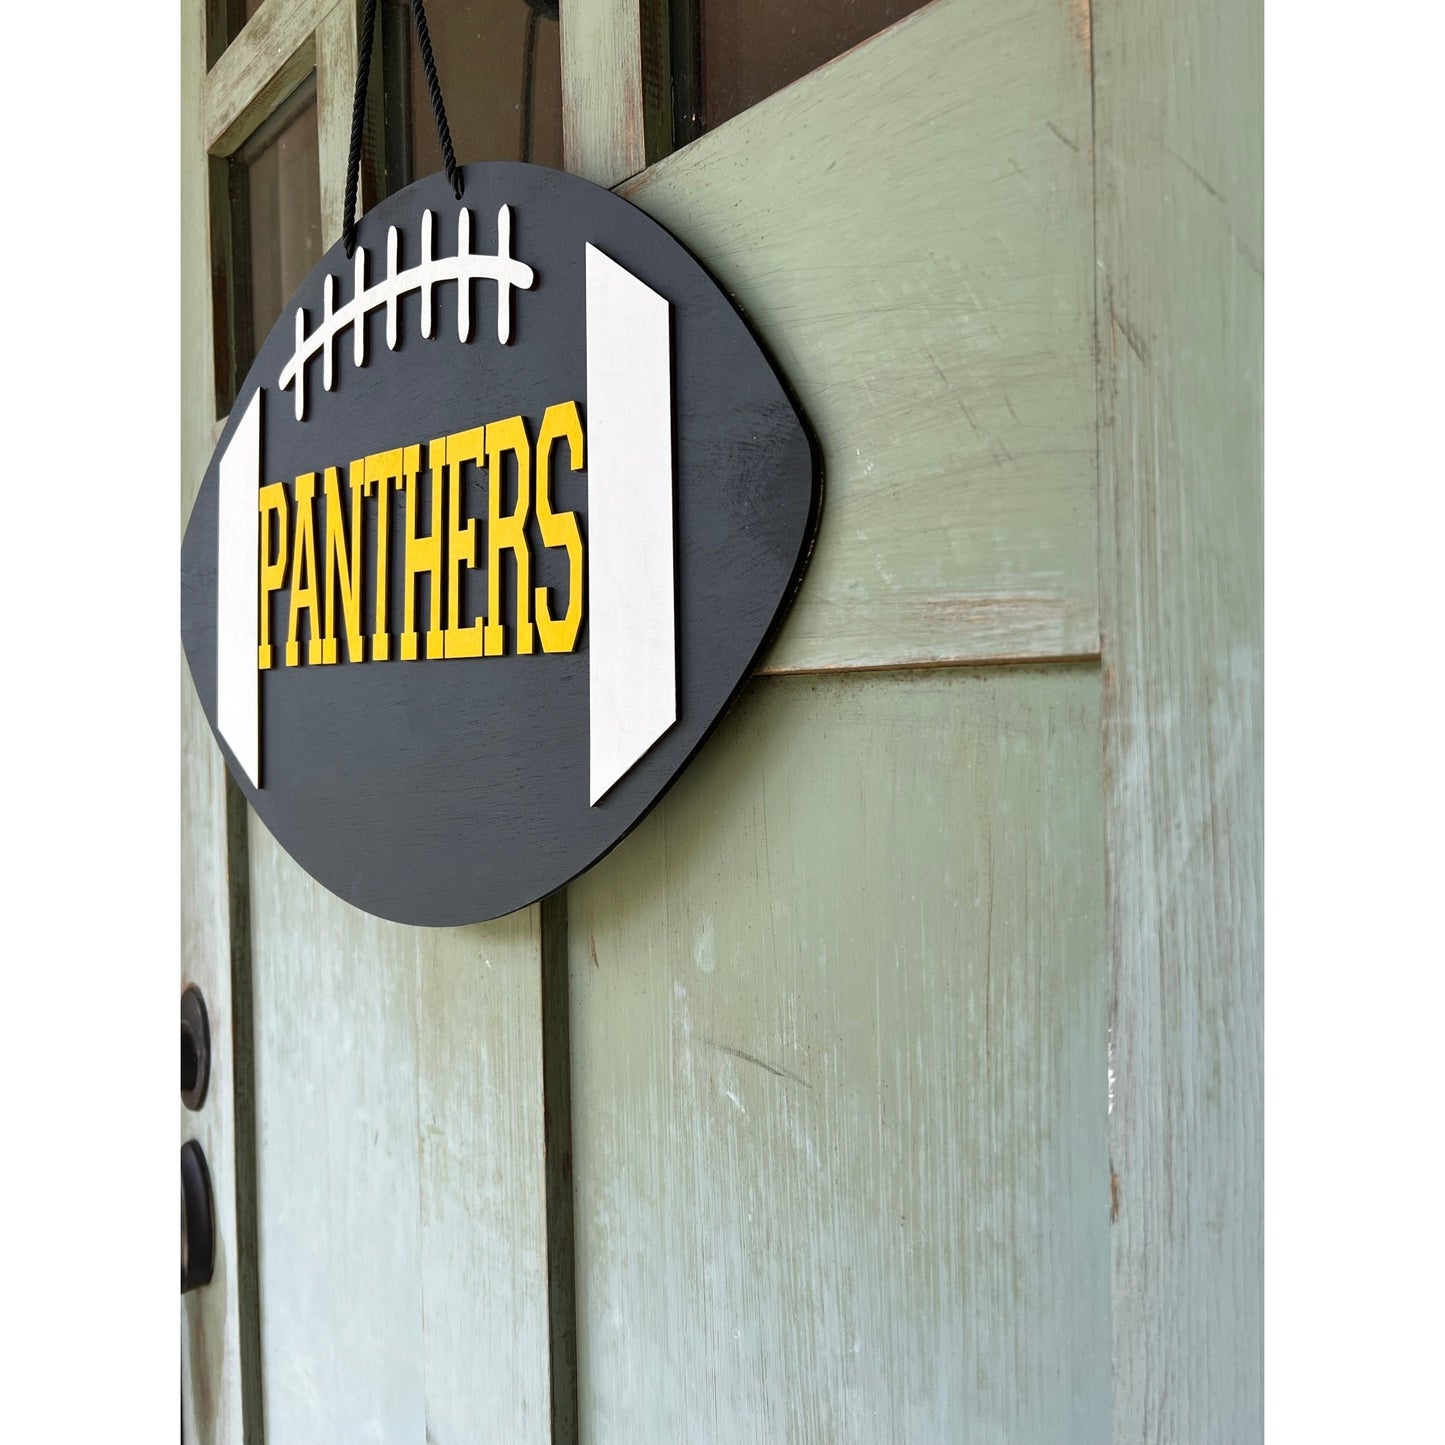 Panthers Football Door Hanger